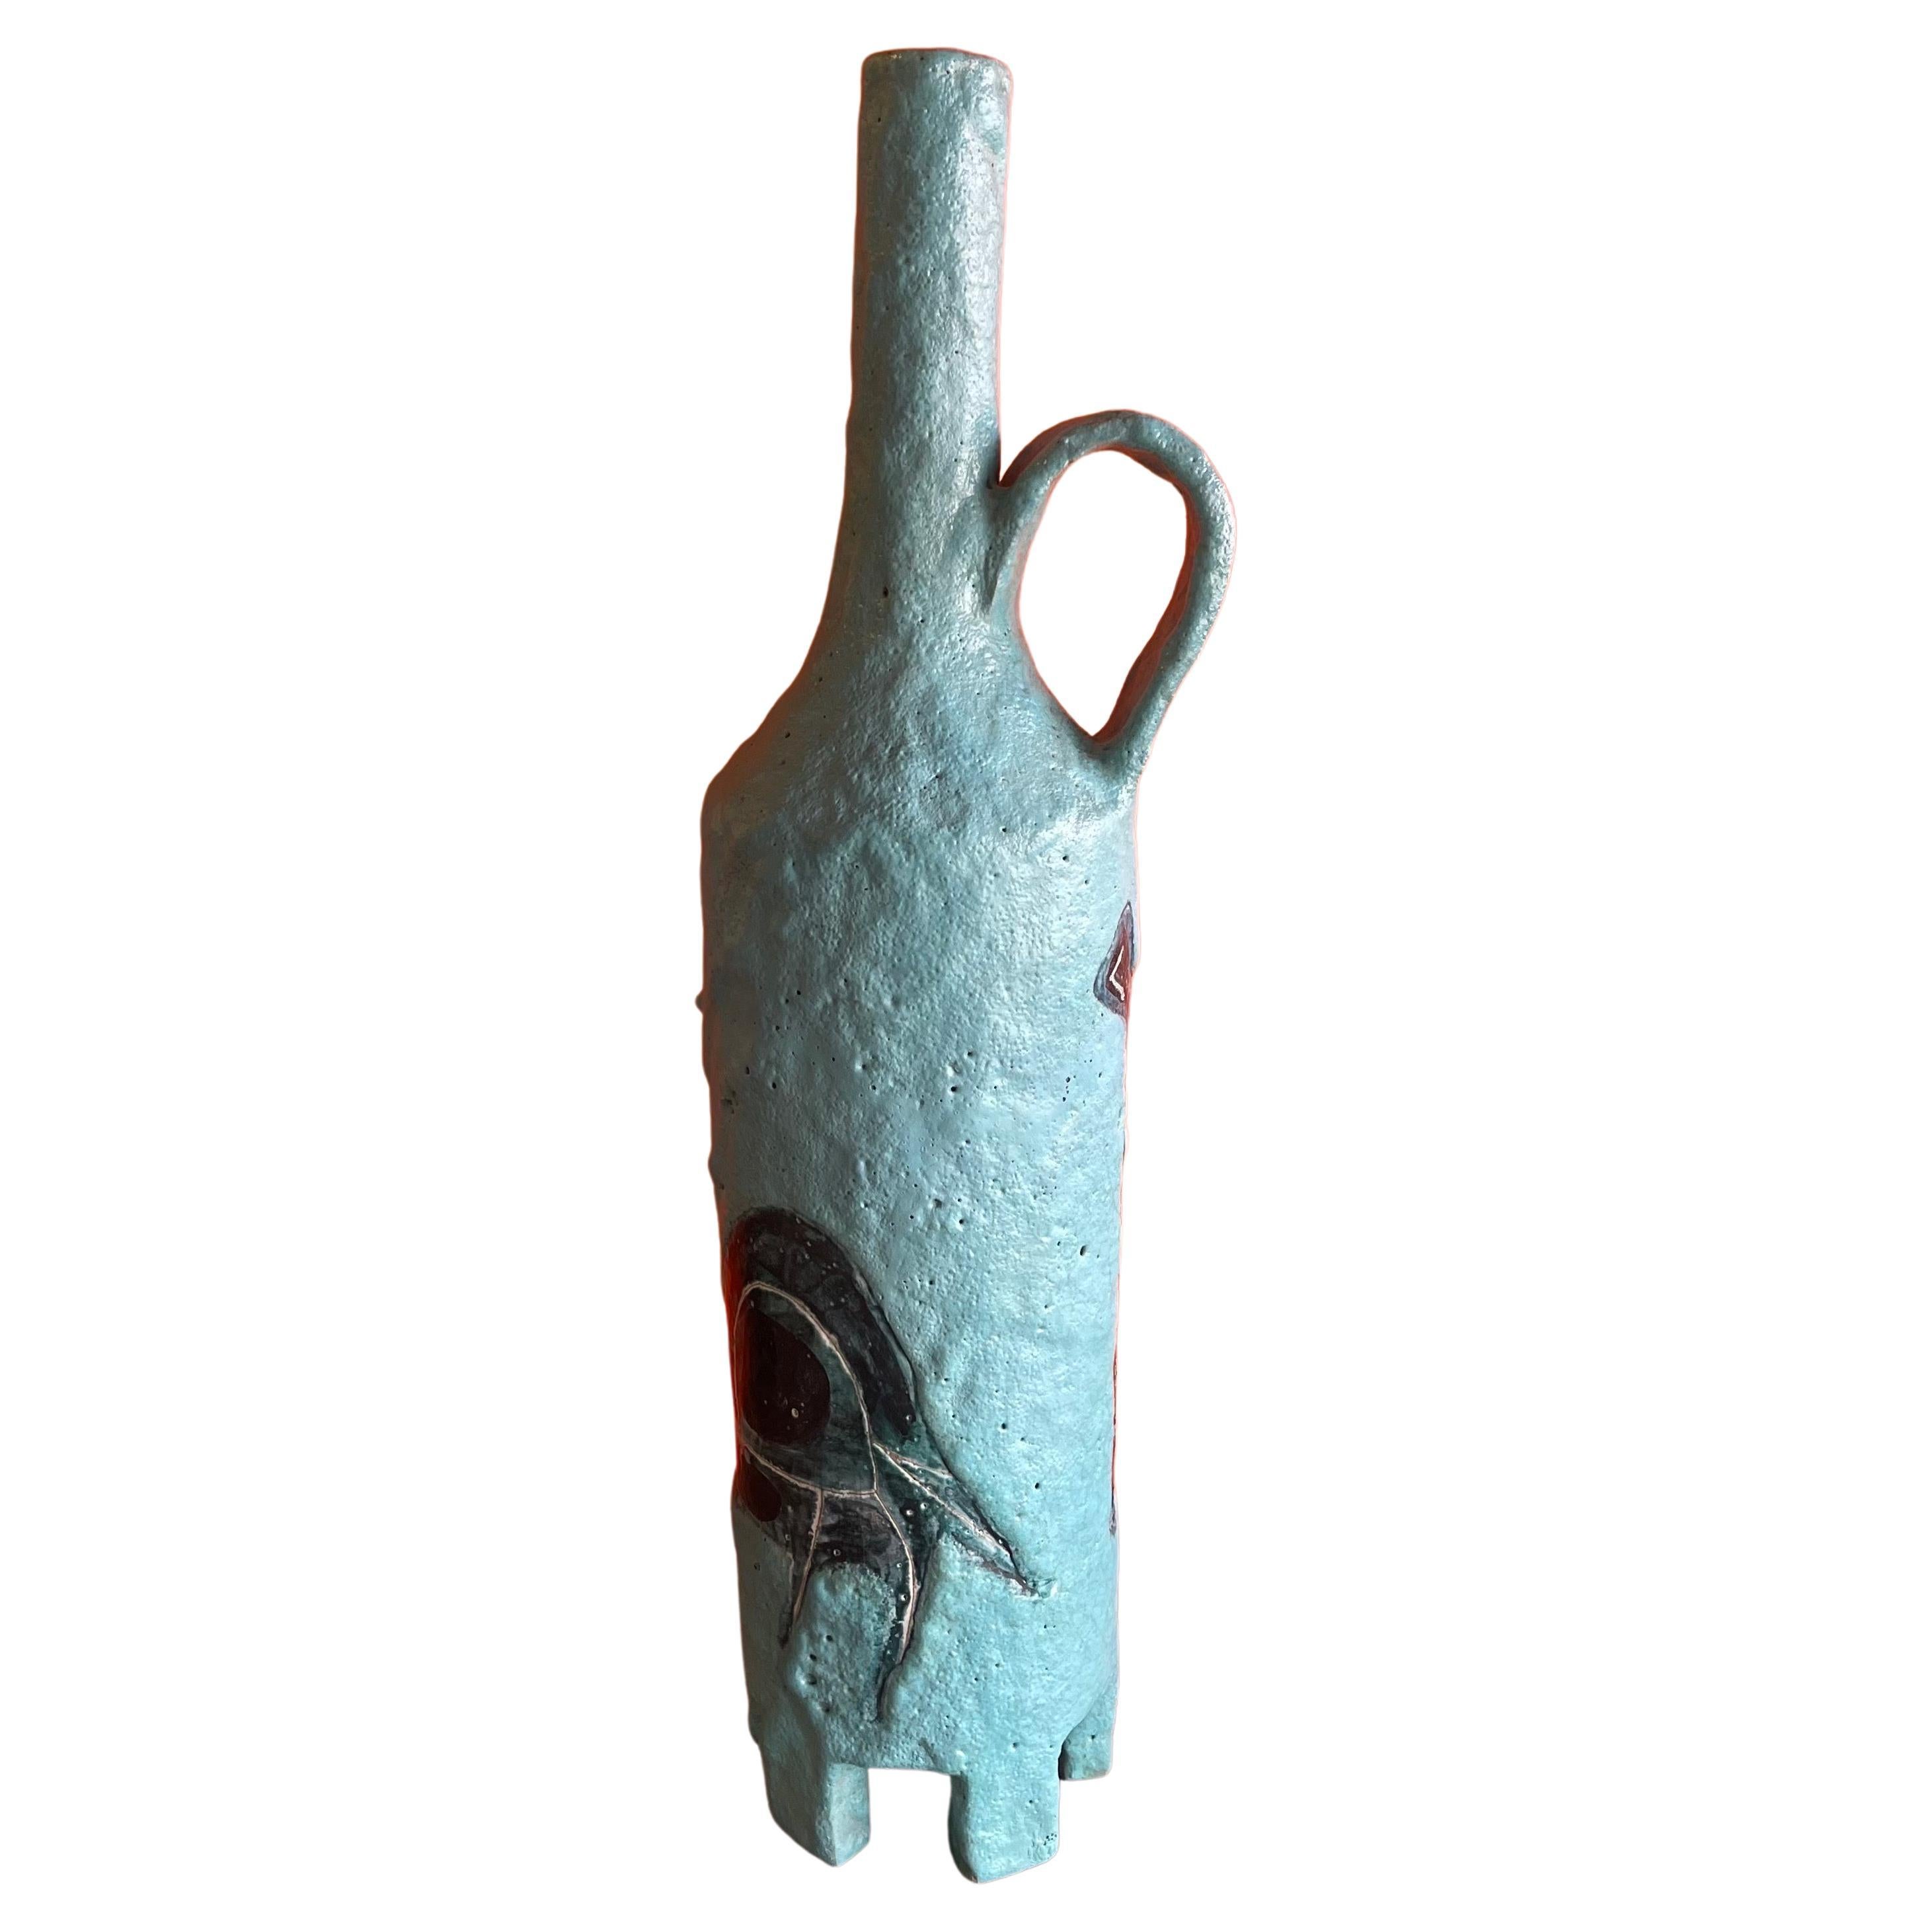 Super seltene MCM Keramik / Keramik behandelt Krug / Vase von Aldo Londi für Bitossi Raymor, ca. 1960er Jahre. Das Stück ist in einem sehr guten Vintage-Zustand mit einer tollen Farbe, Textur und komplizierten Details; es wäre eine fantastische